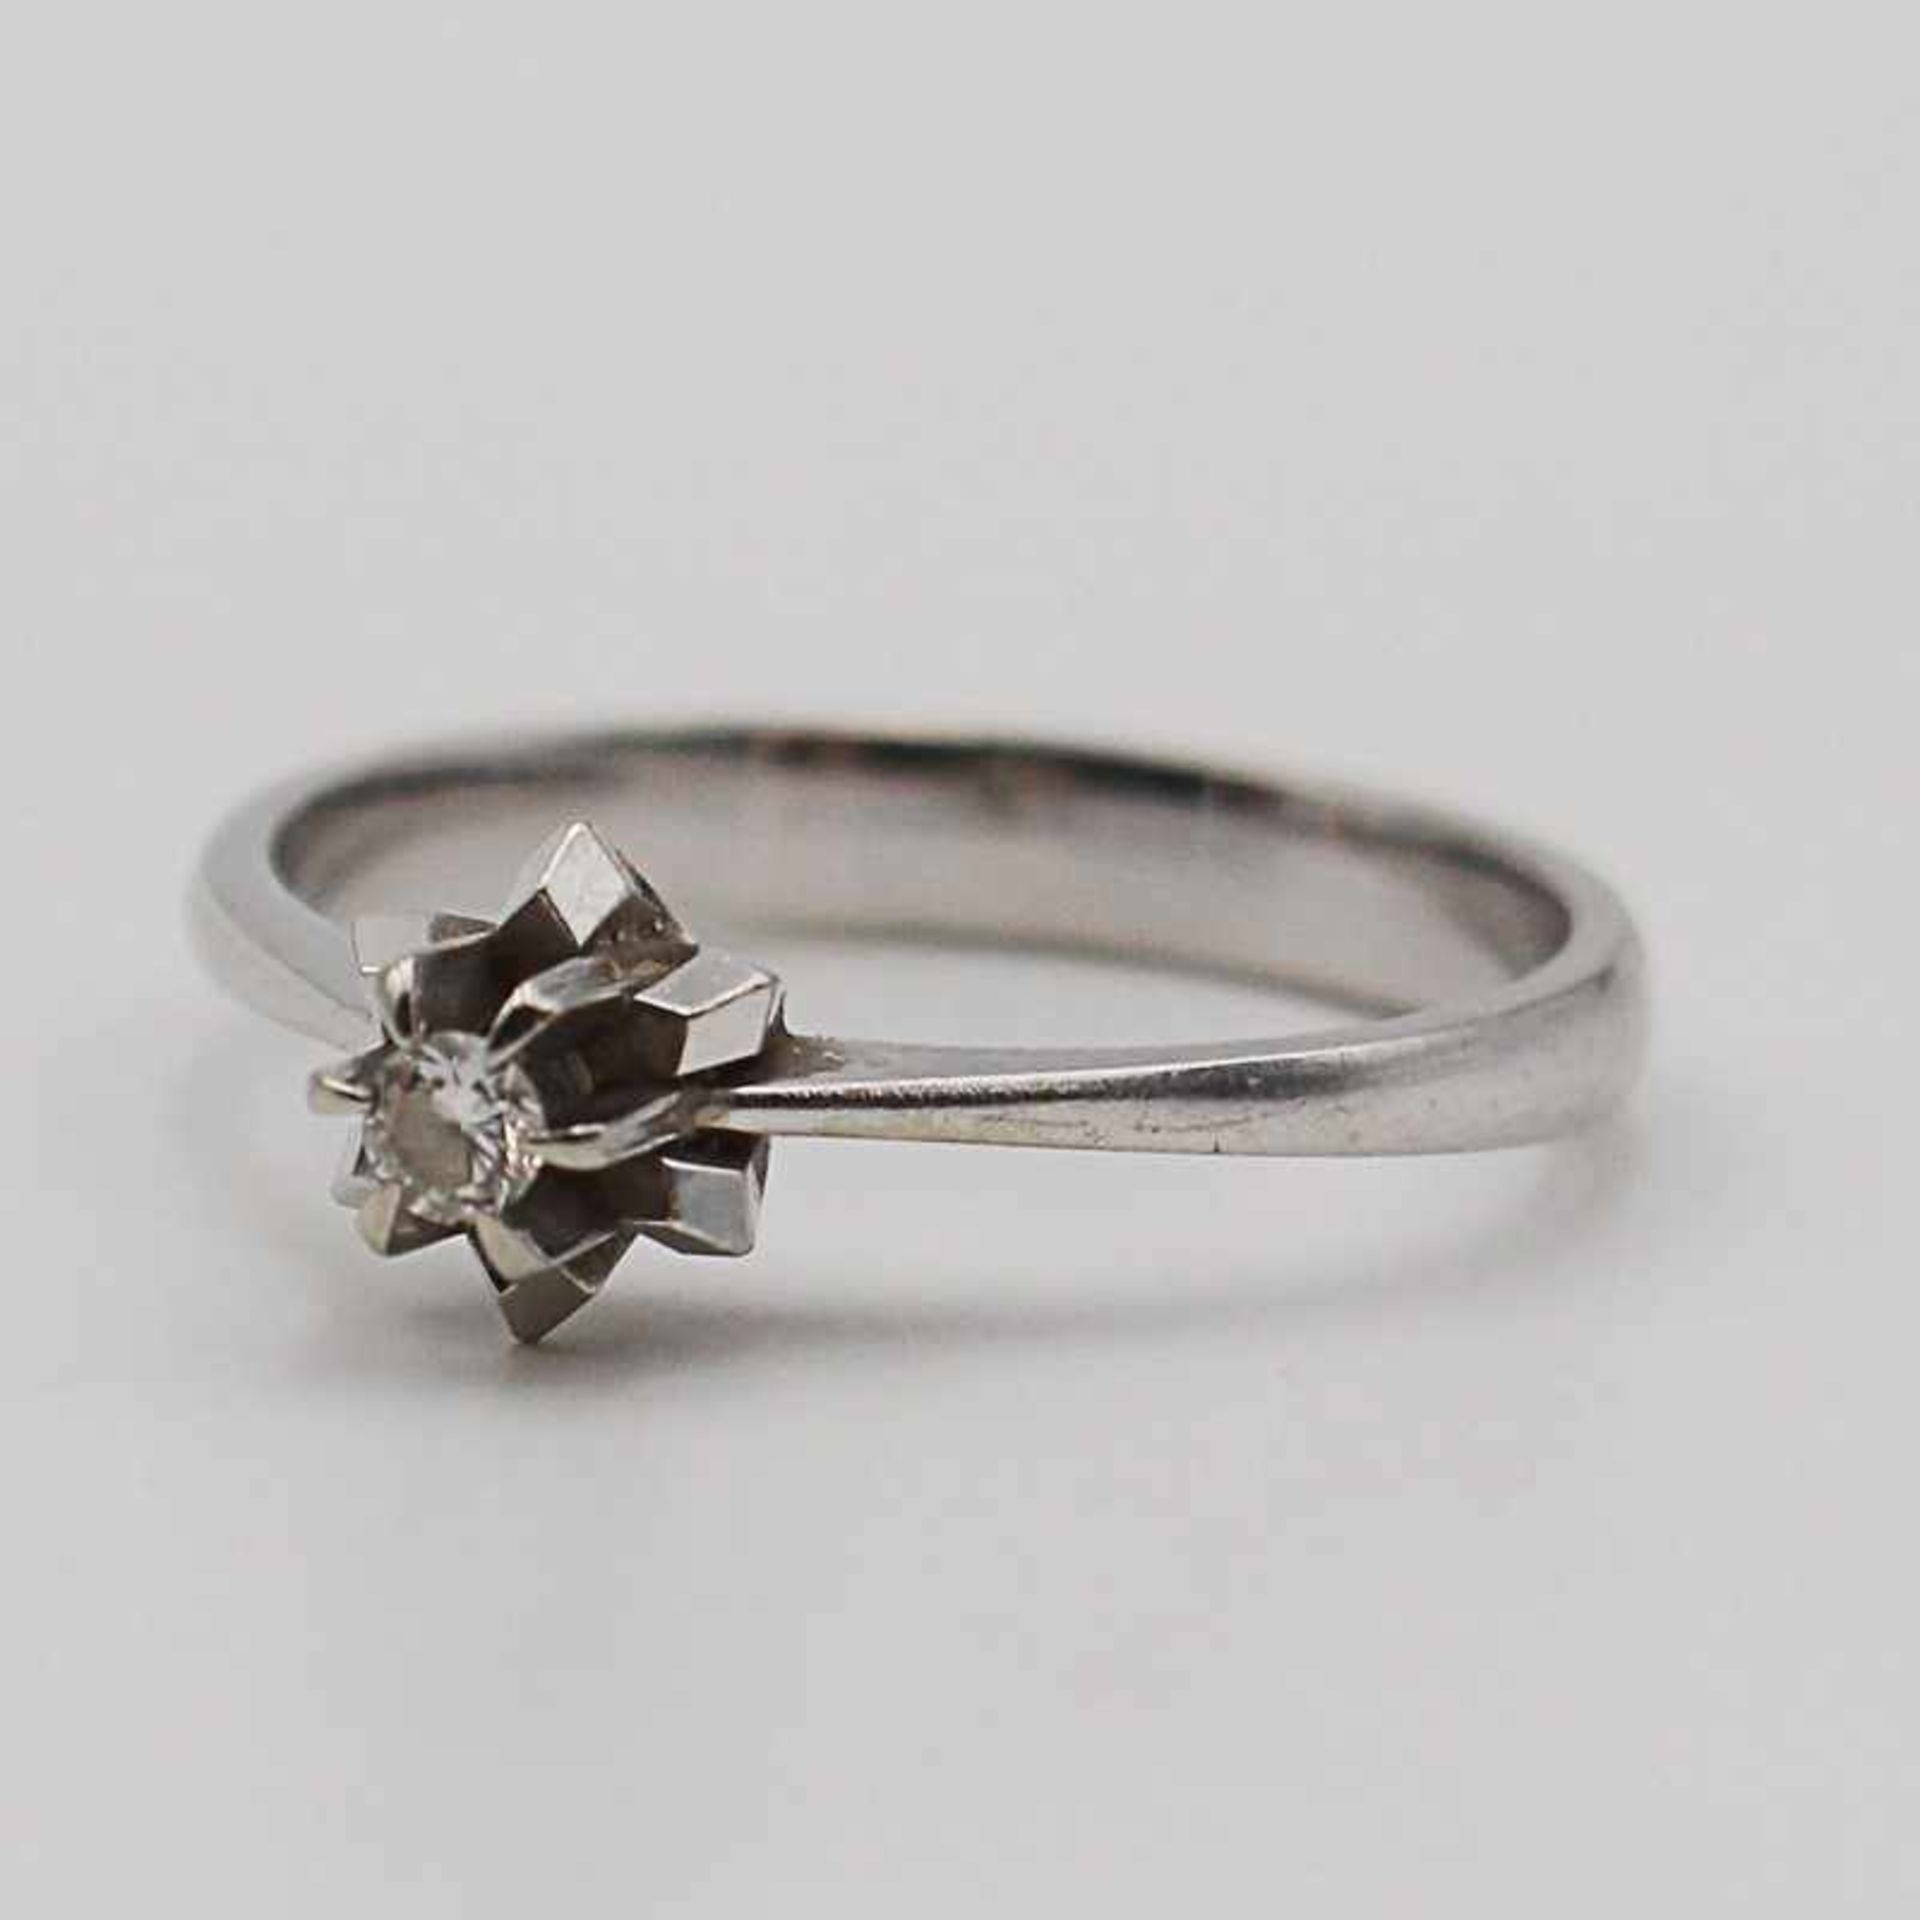 Diamant - DamenringWG 750, sternförmig gestufter Ringkopf, mittig besetzt mit einem Diamant, ca.0,